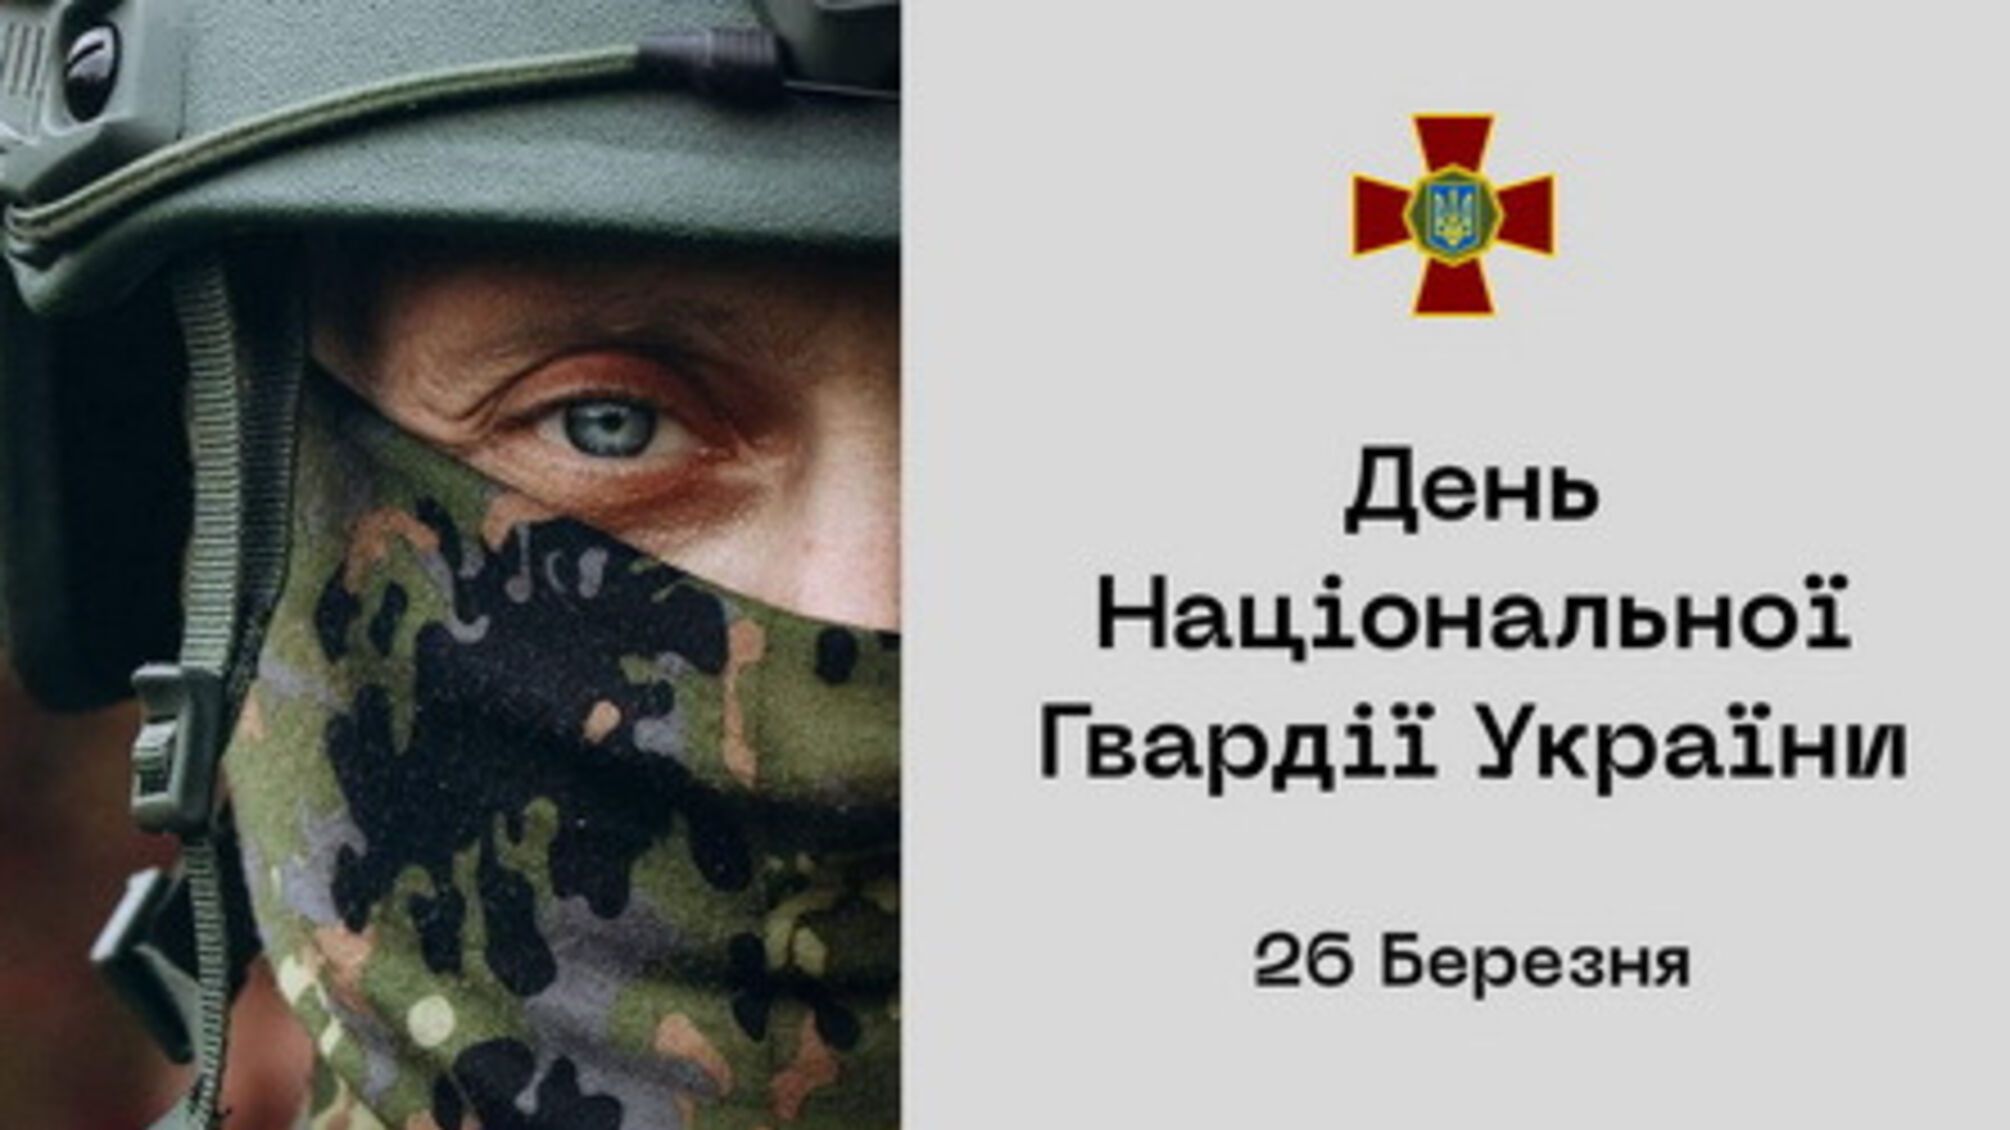 26 марта – День Национальной гвардии Украины